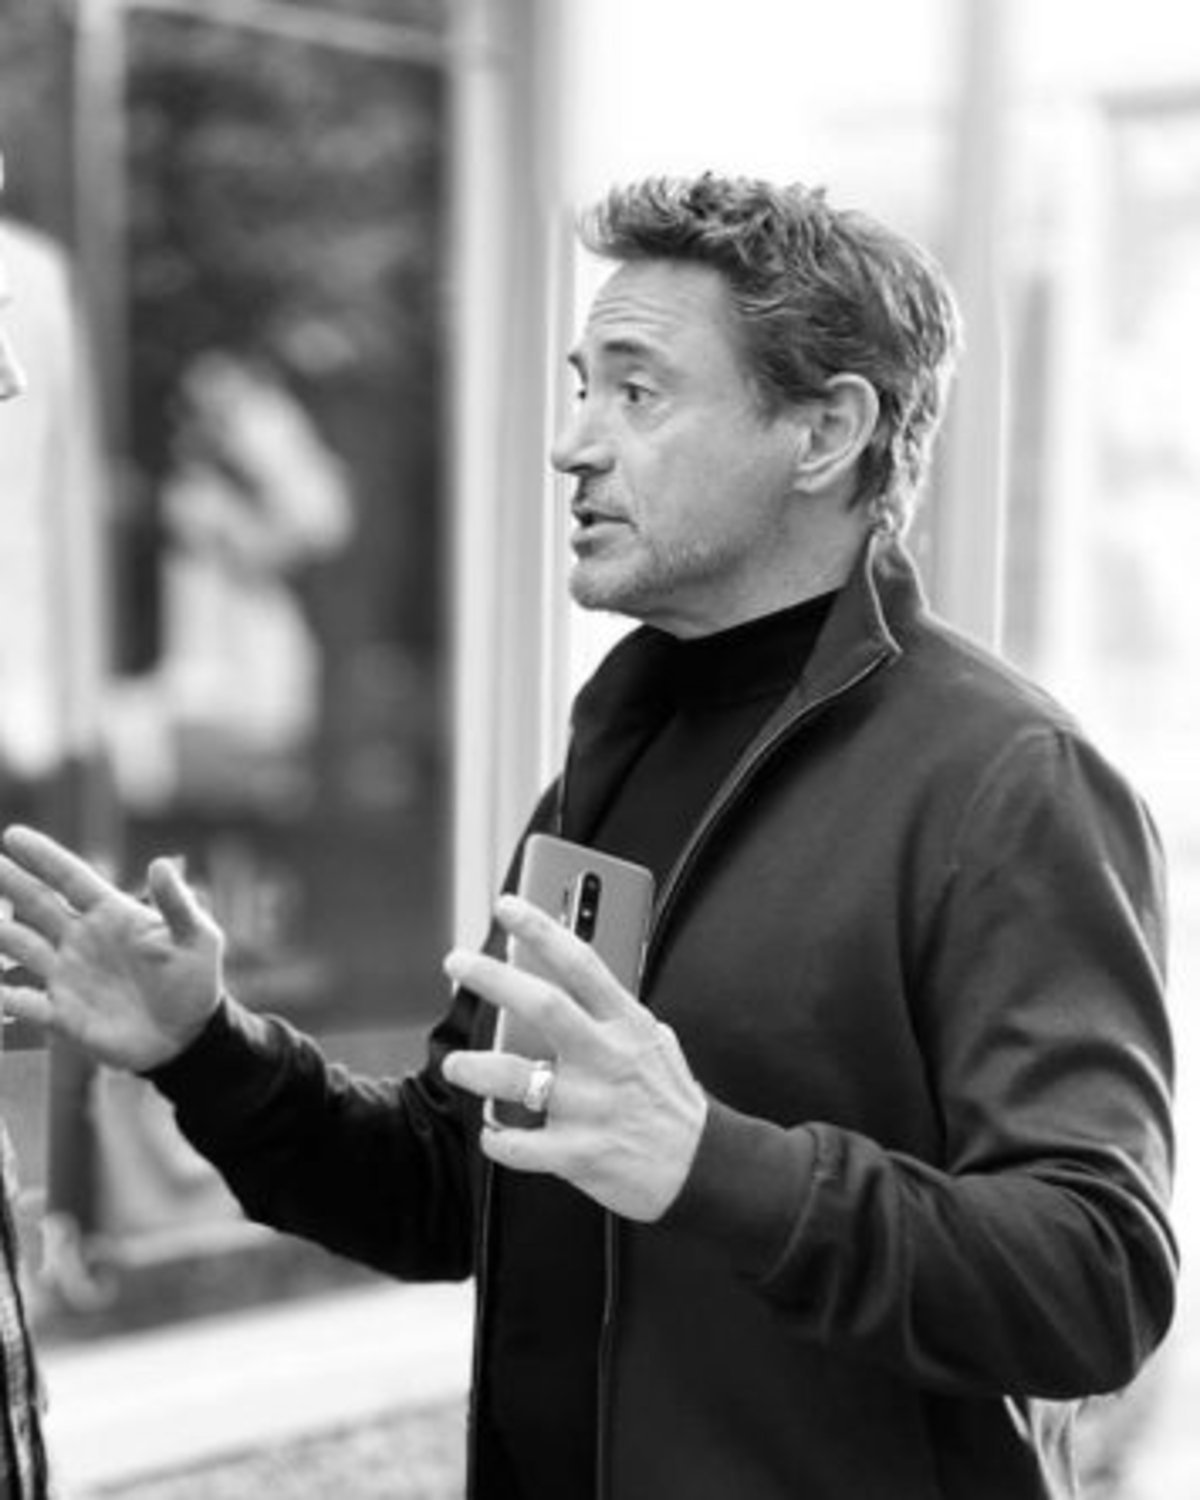 Iron Man ya tiene nuevo móvil: unas nuevas imágenes de Robert Downey Jr. muestran el aspecto del OnePlus 8